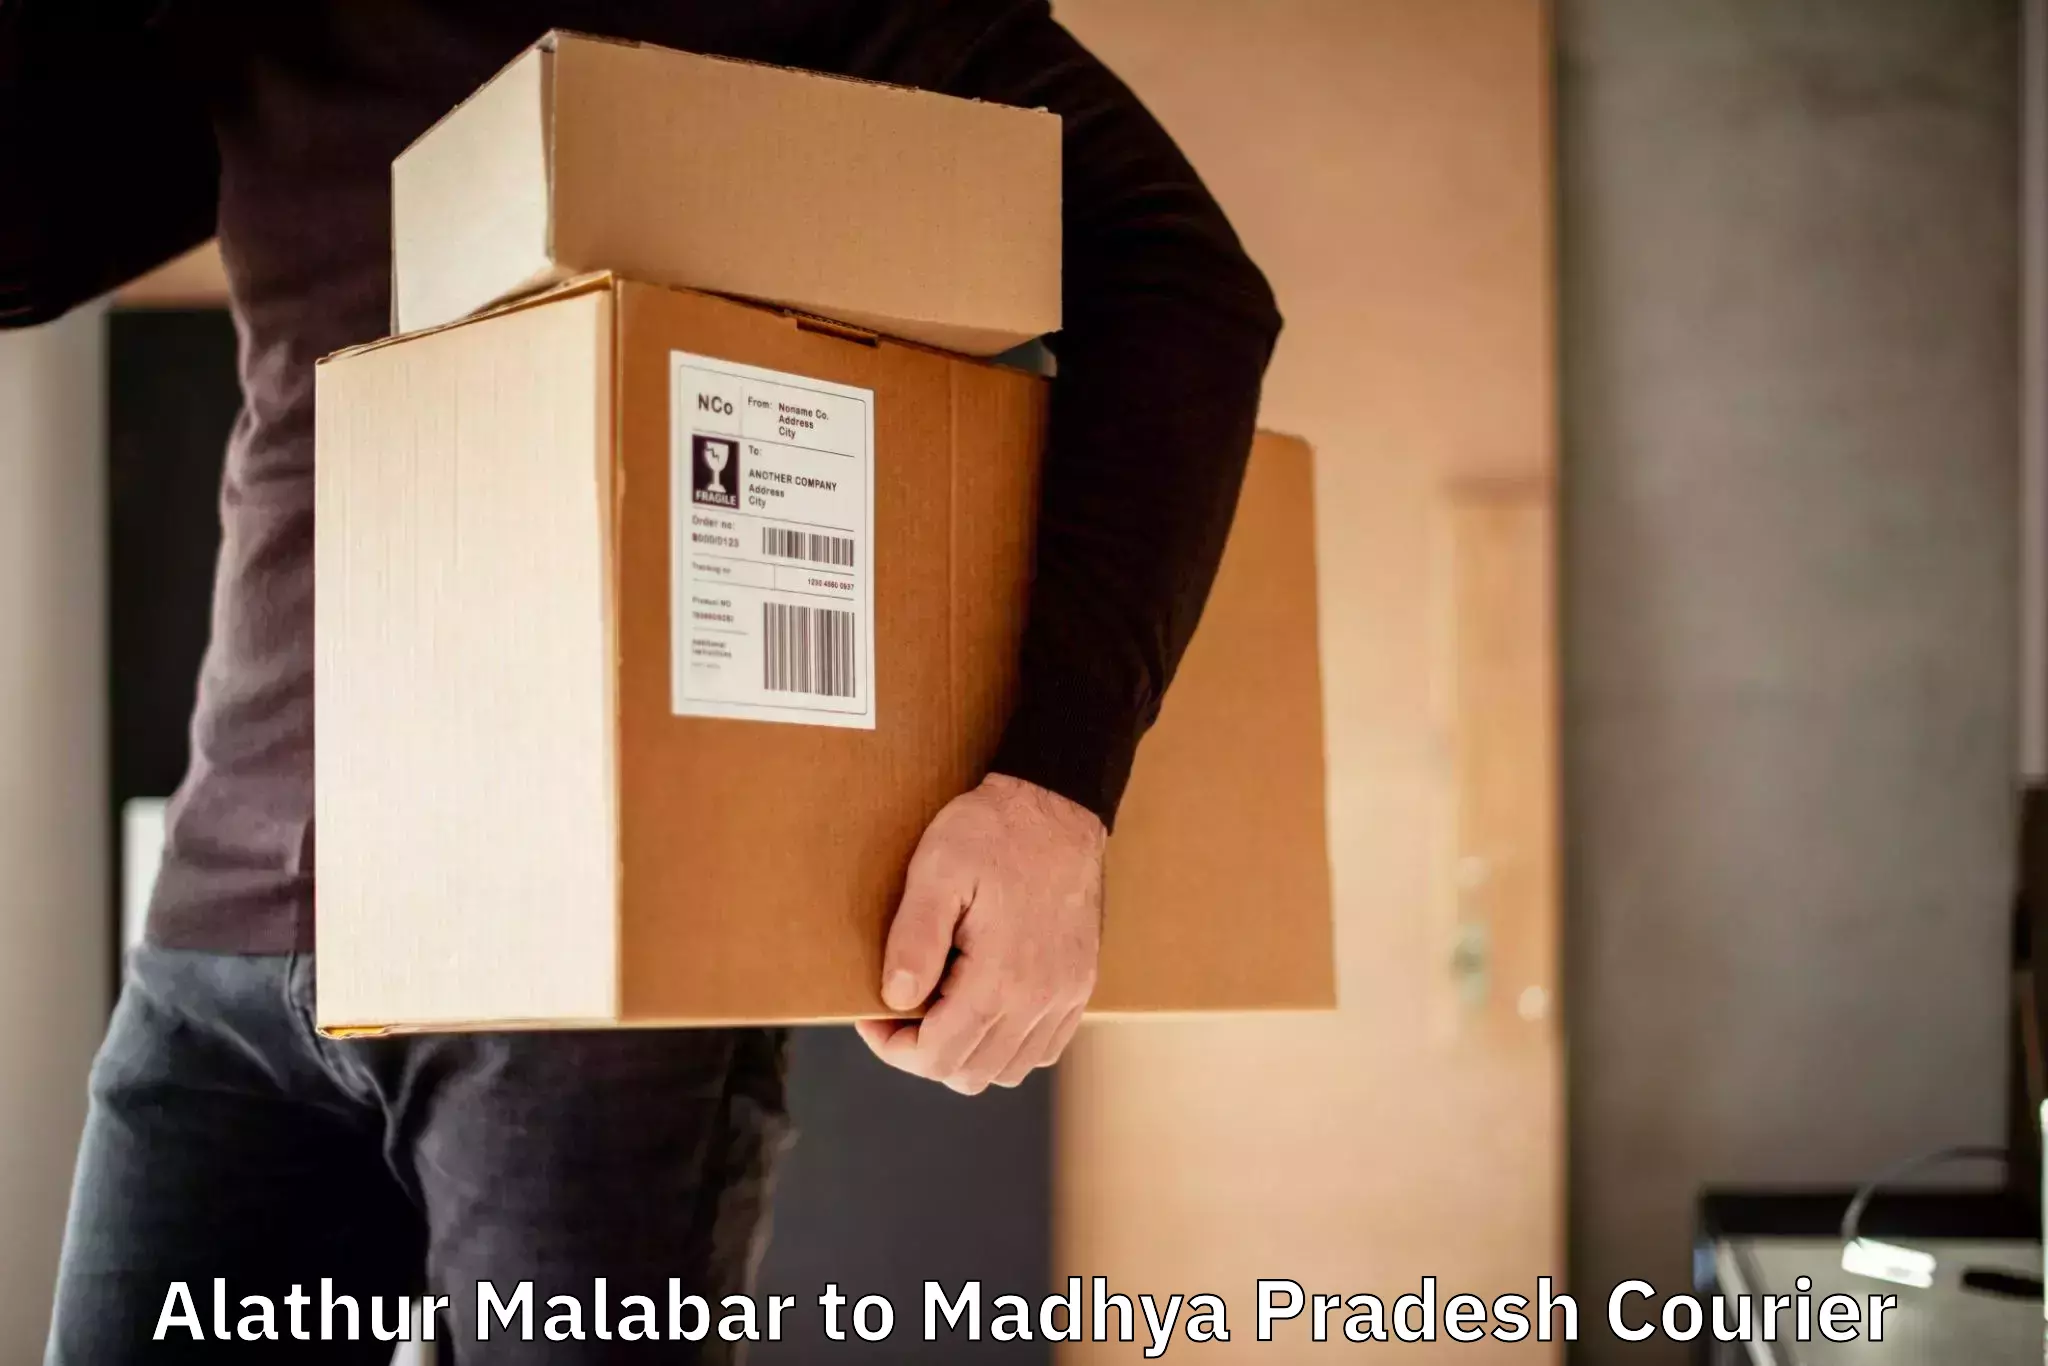 Express package handling Alathur Malabar to Madhya Pradesh